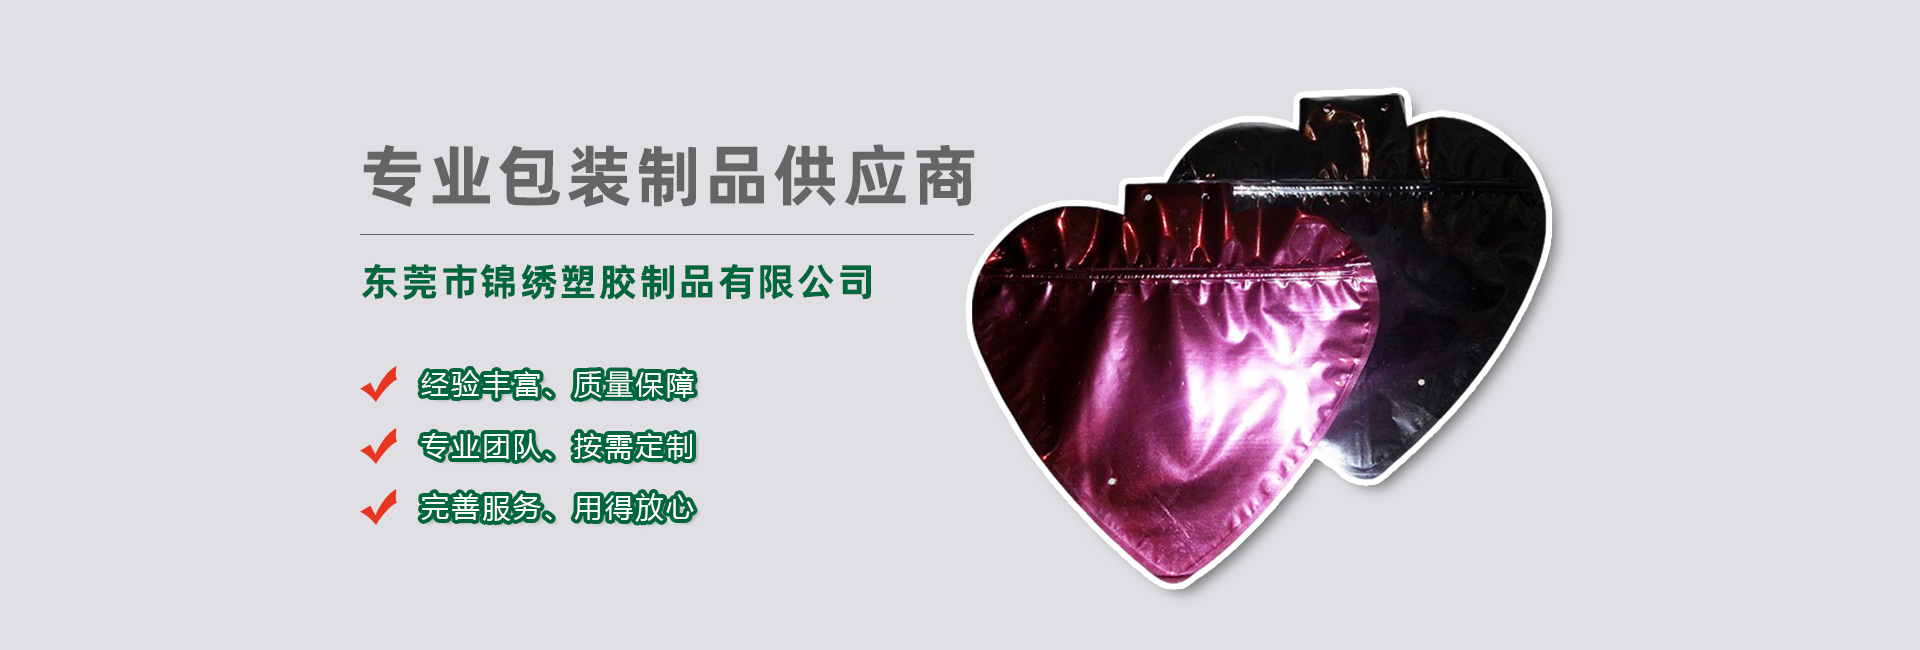 徐州食品袋banner